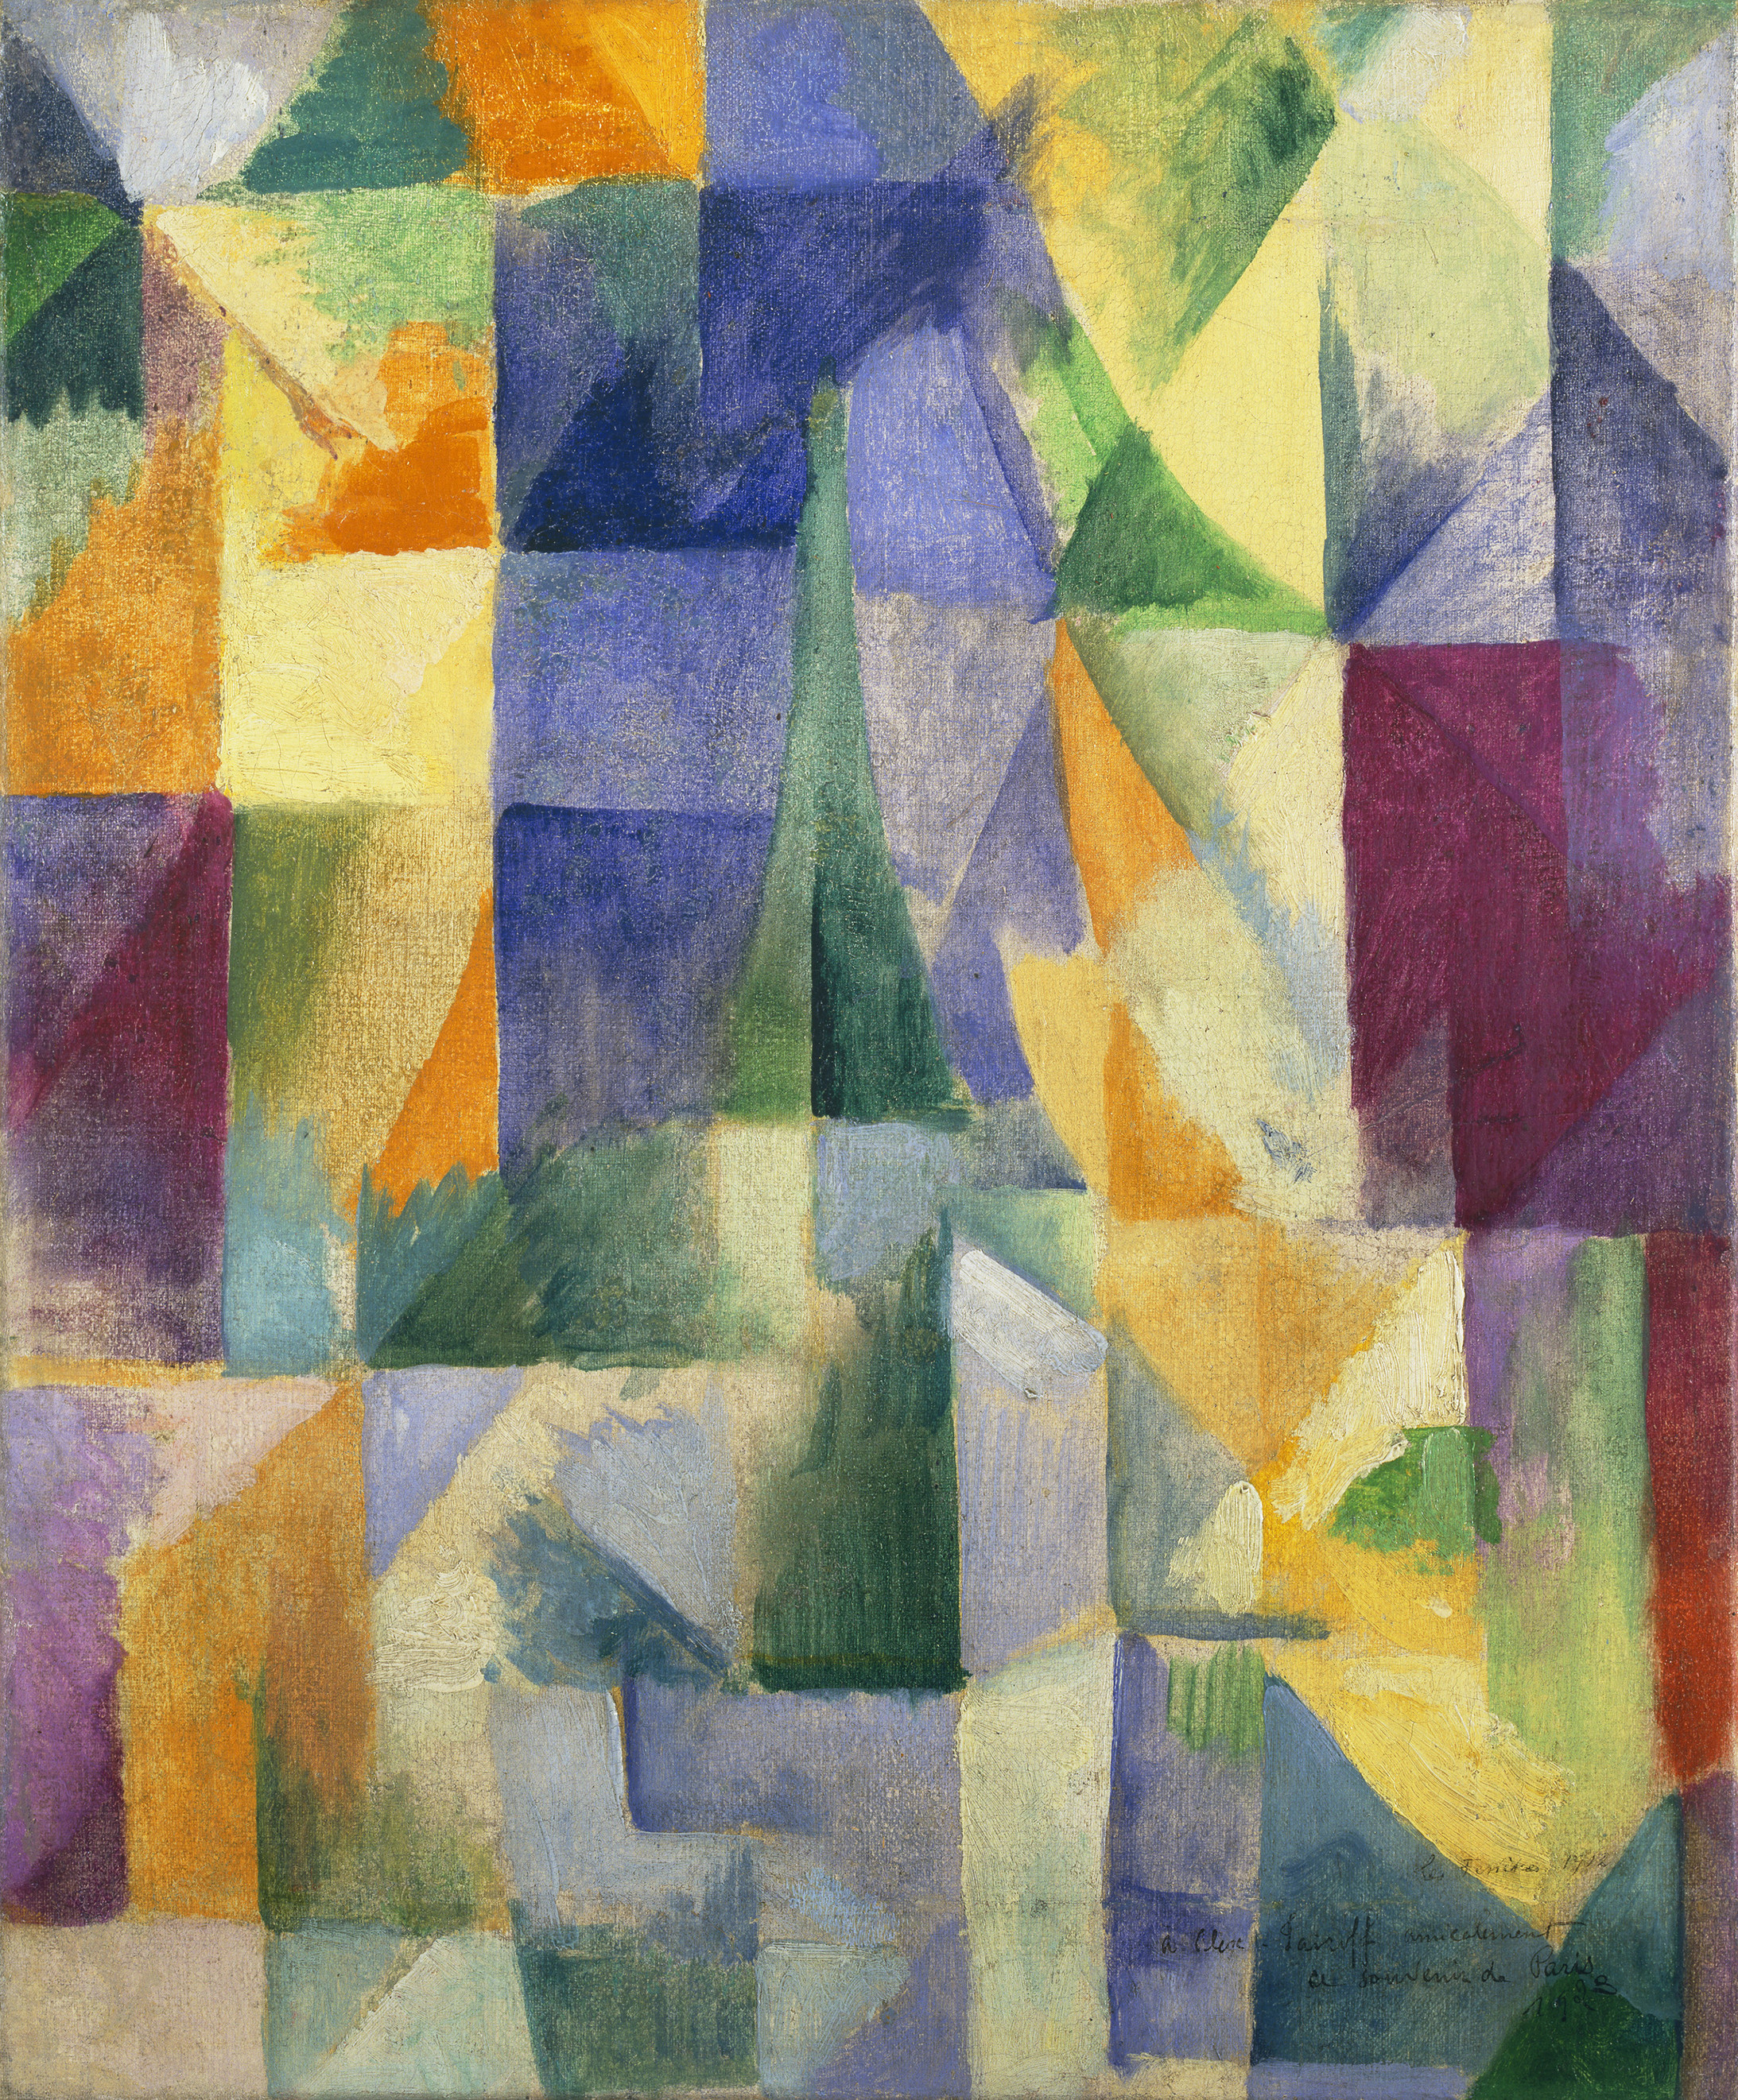 Robert Delaunay: Fenêtres ouvertes simultanément (1ère partie, 3ème motif), 1912, Öl auf Leinwand, 45,7 x 37,5 cm, Tate: Ankauf 1967, Foto: © Tate, London, 2018